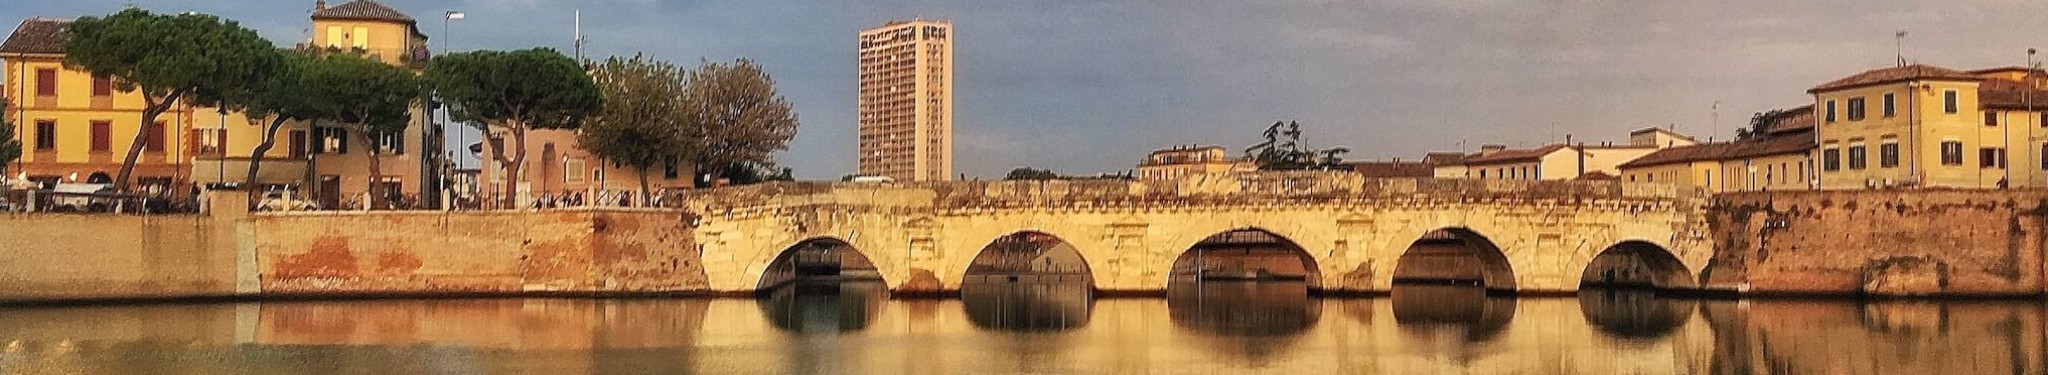 The Tiberius Bridge, Rimini 2